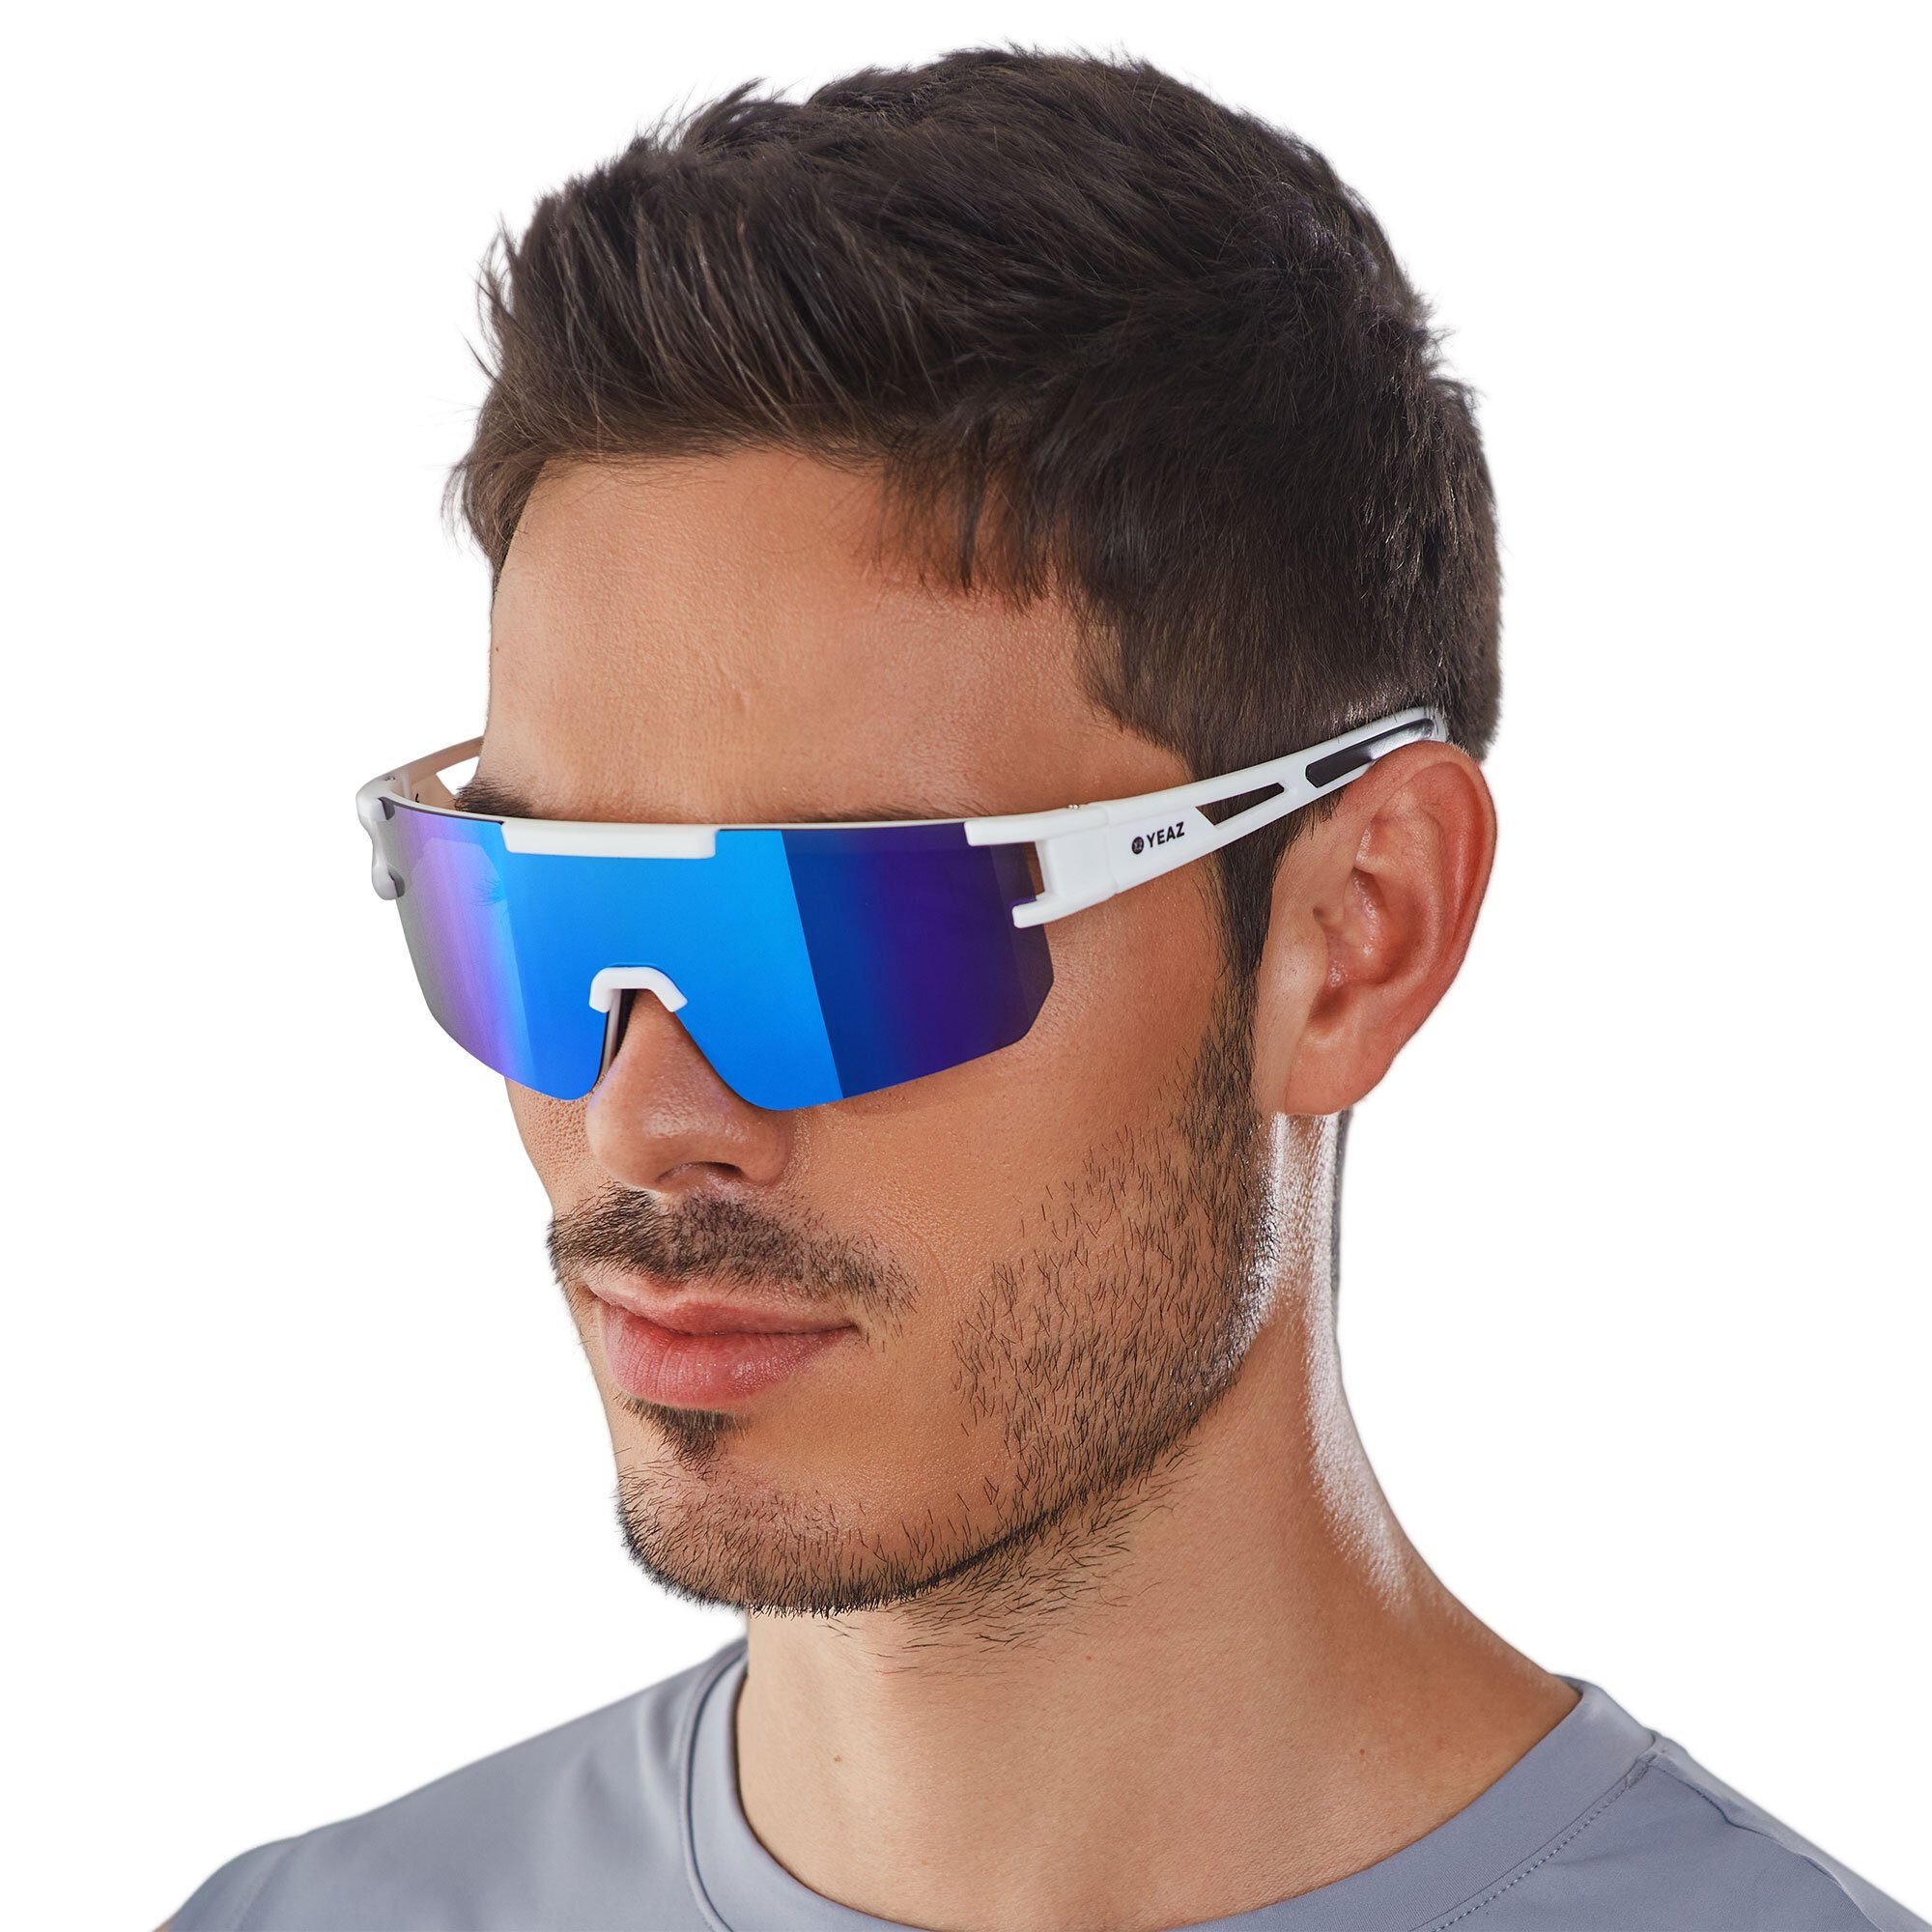 Sportbrille bright sport-sonnenbrille Sicht optimierter Guter SUNSPARK bei Schutz white/blue, YEAZ